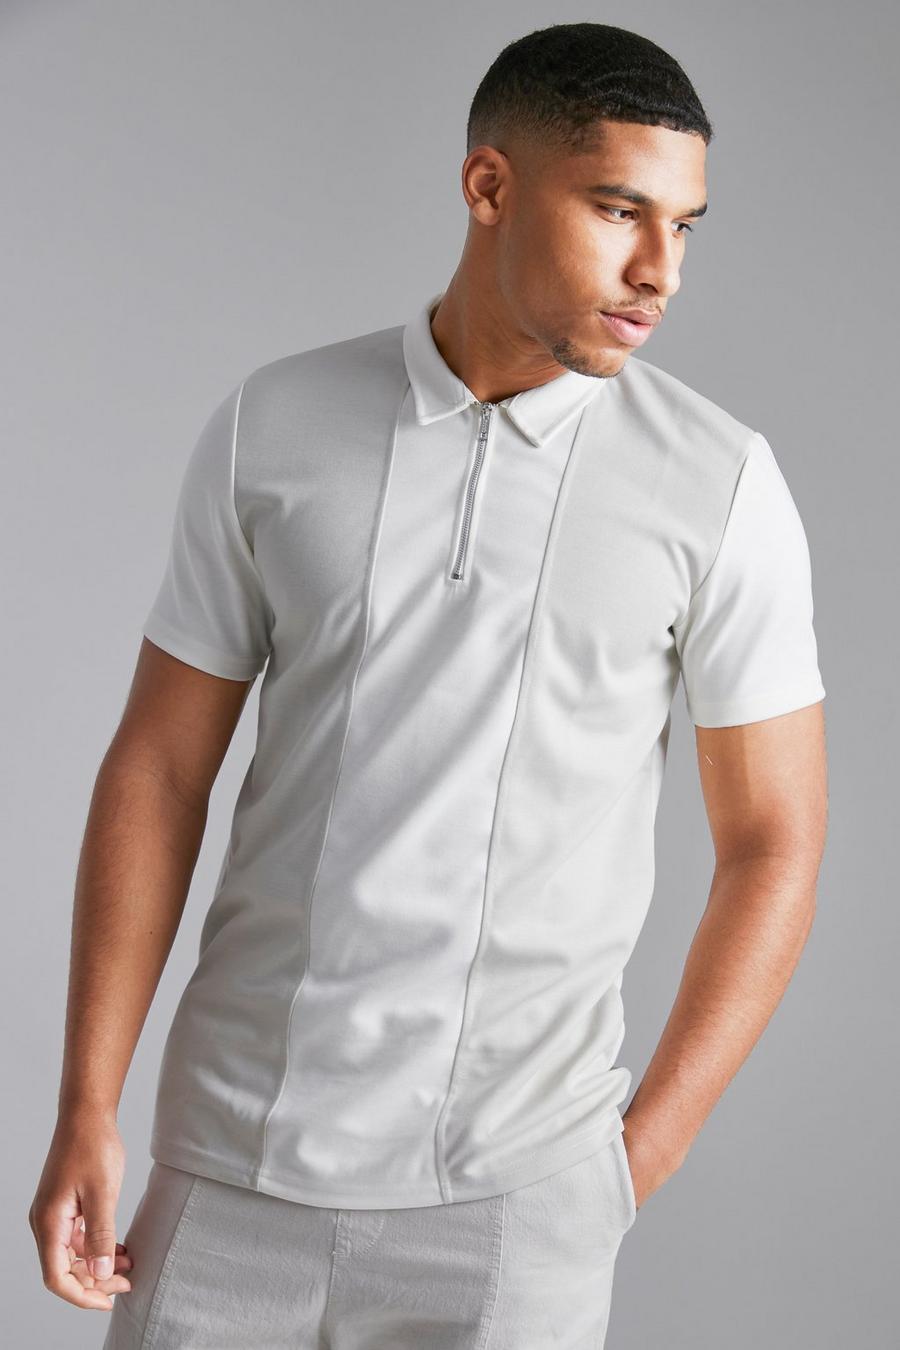 שמנת blanco חולצת פולו אלגנטית בגזרה צרה עם פאנל בצבע מנוגד, לגברים גבוהים